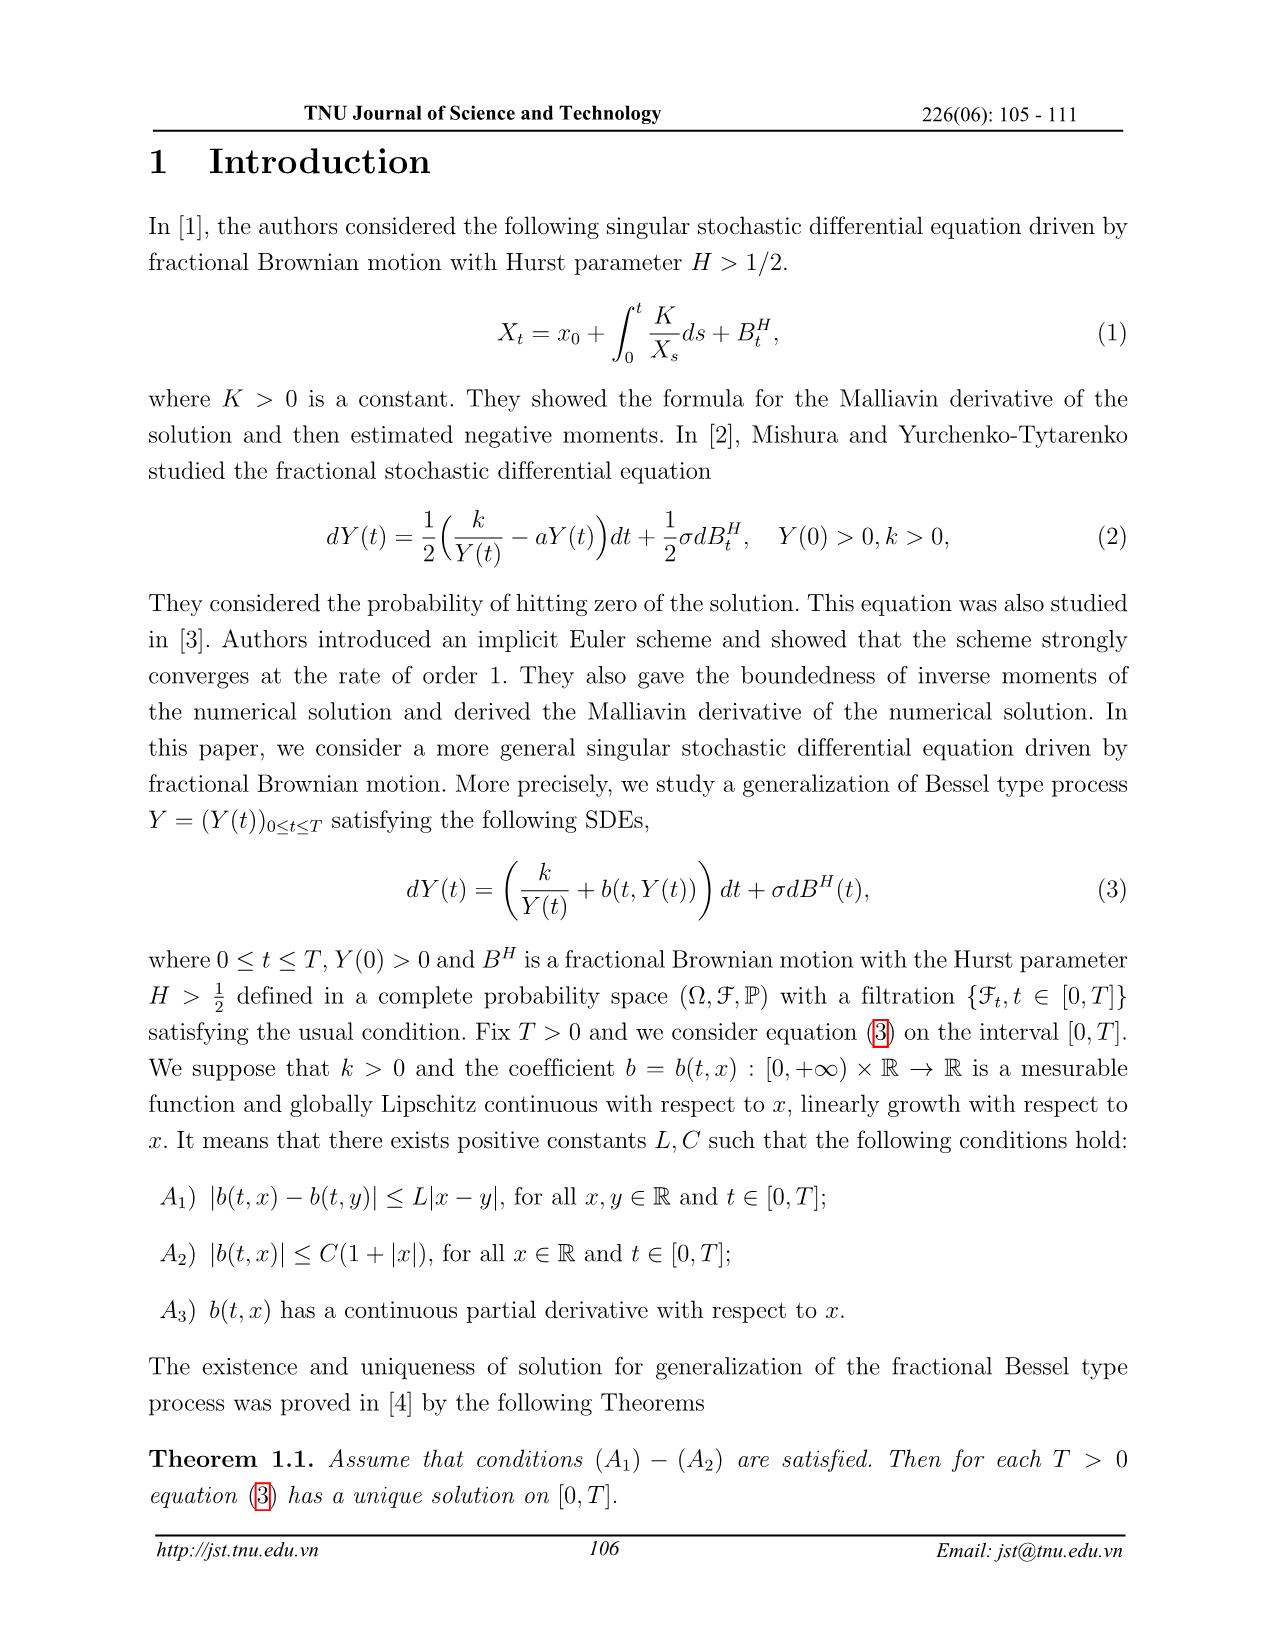 Đạo hàm Malliavin của quá trình Bessel phân thứ dạng tổng quát trang 2